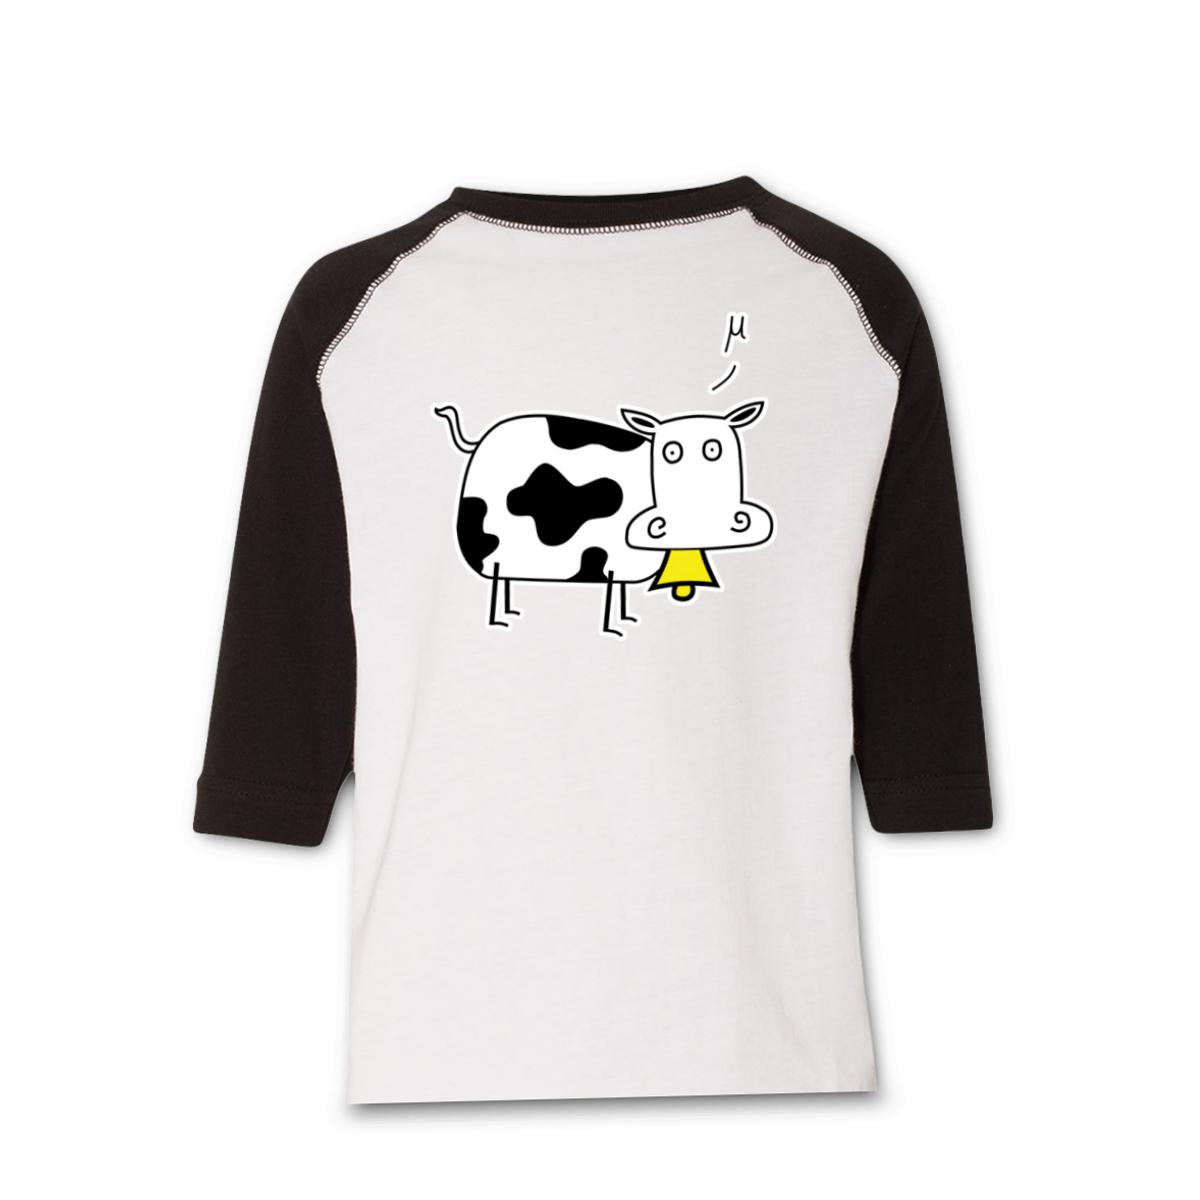 Mu Cow Toddler Raglan Tee 56T white-black